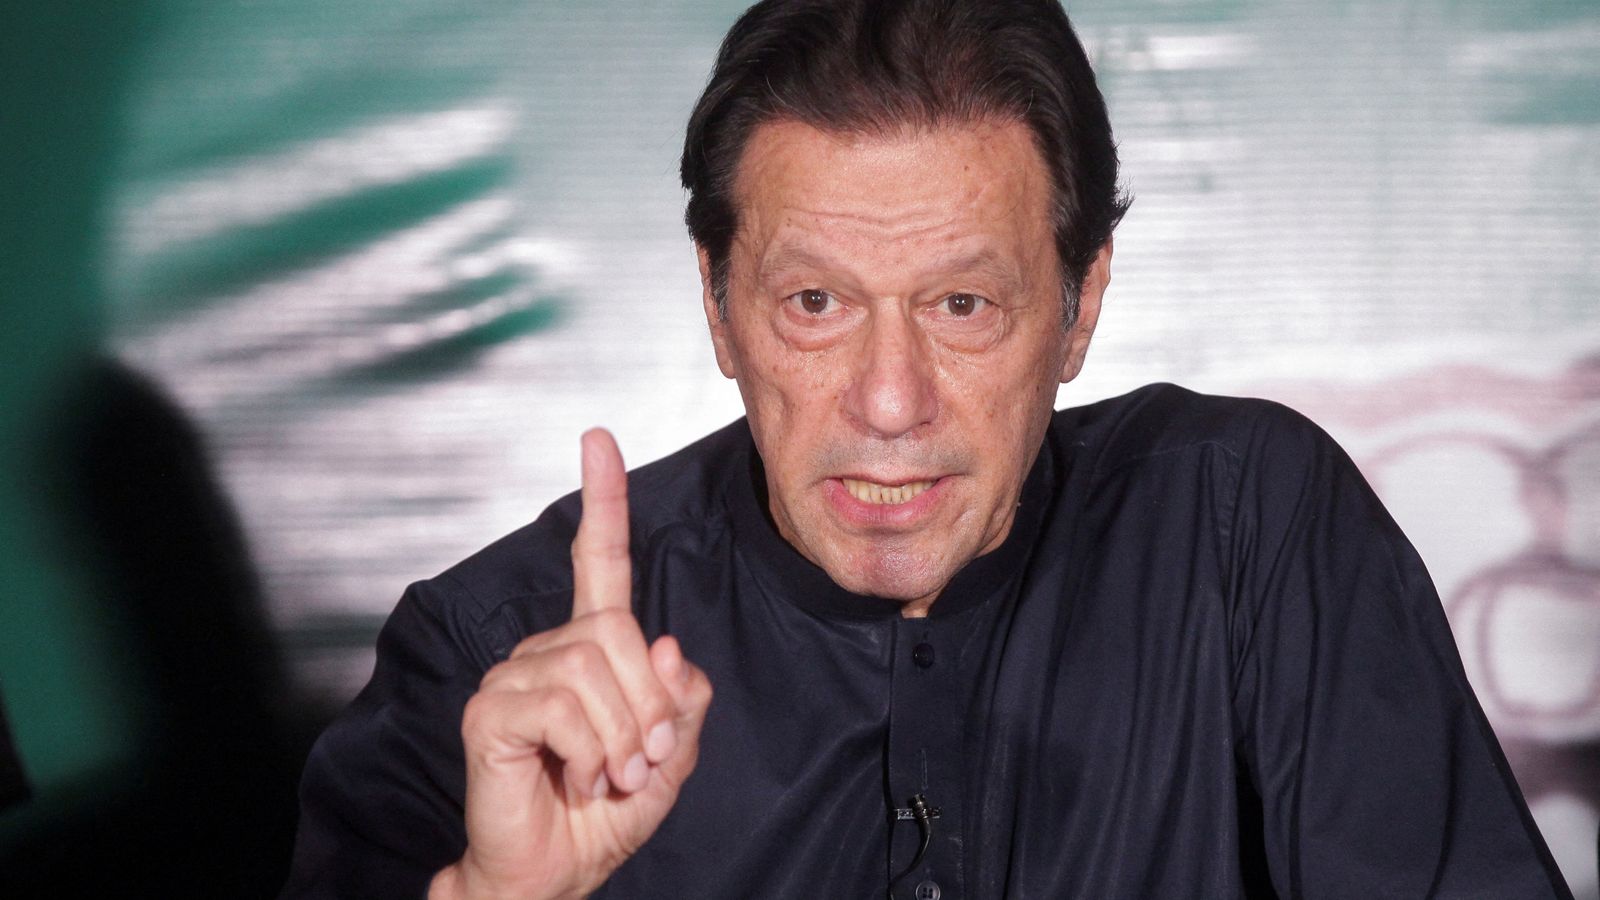 Der frühere pakistanische Premierminister Imran Khan wurde wegen der Preisgabe von Staatsgeheimnissen zu zehn Jahren Gefängnis verurteilt  Britische Nachrichten